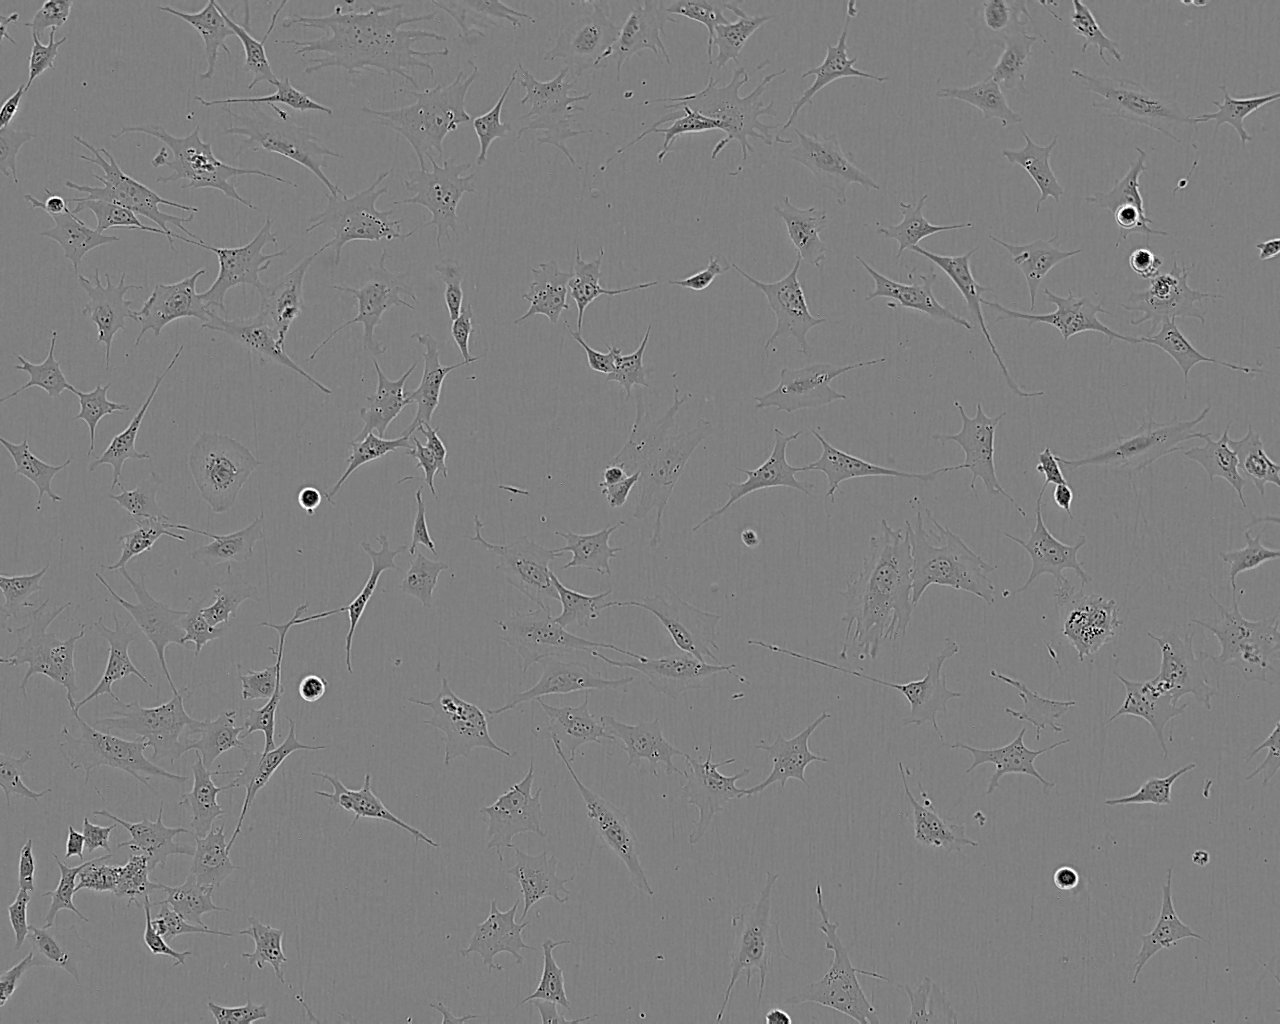 DSL-6A/C1 epithelioid cells大鼠胰腺癌细胞系,DSL-6A/C1 epithelioid cells